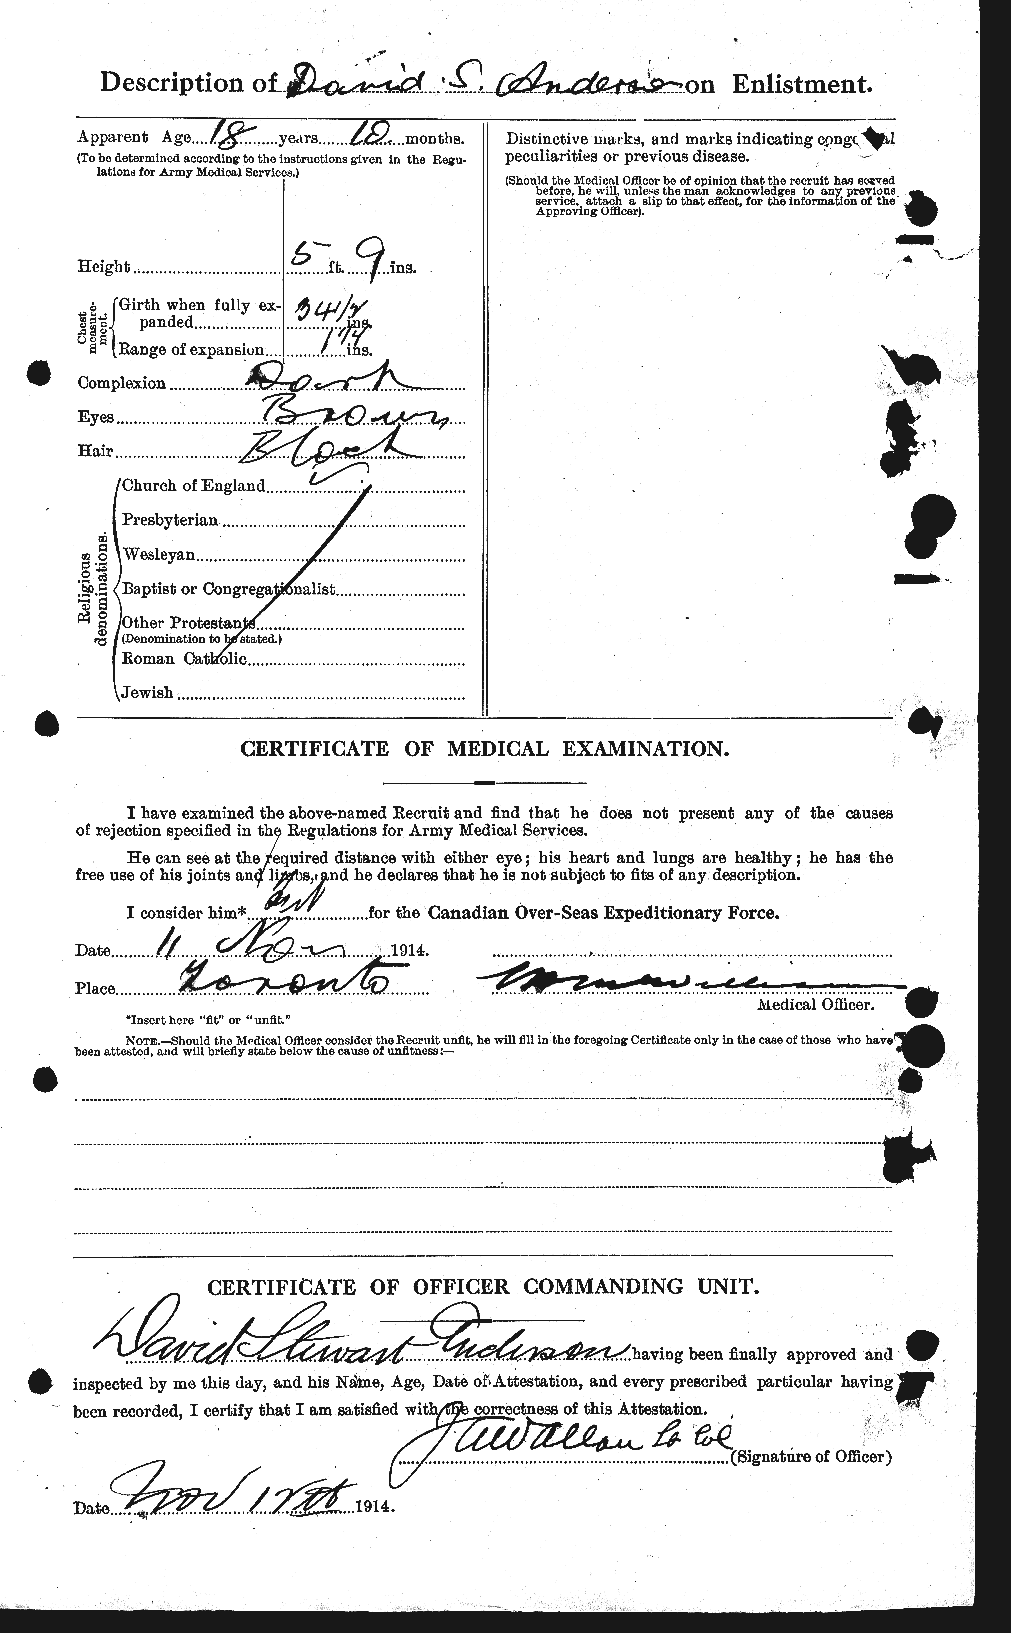 Dossiers du Personnel de la Première Guerre mondiale - CEC 209997b